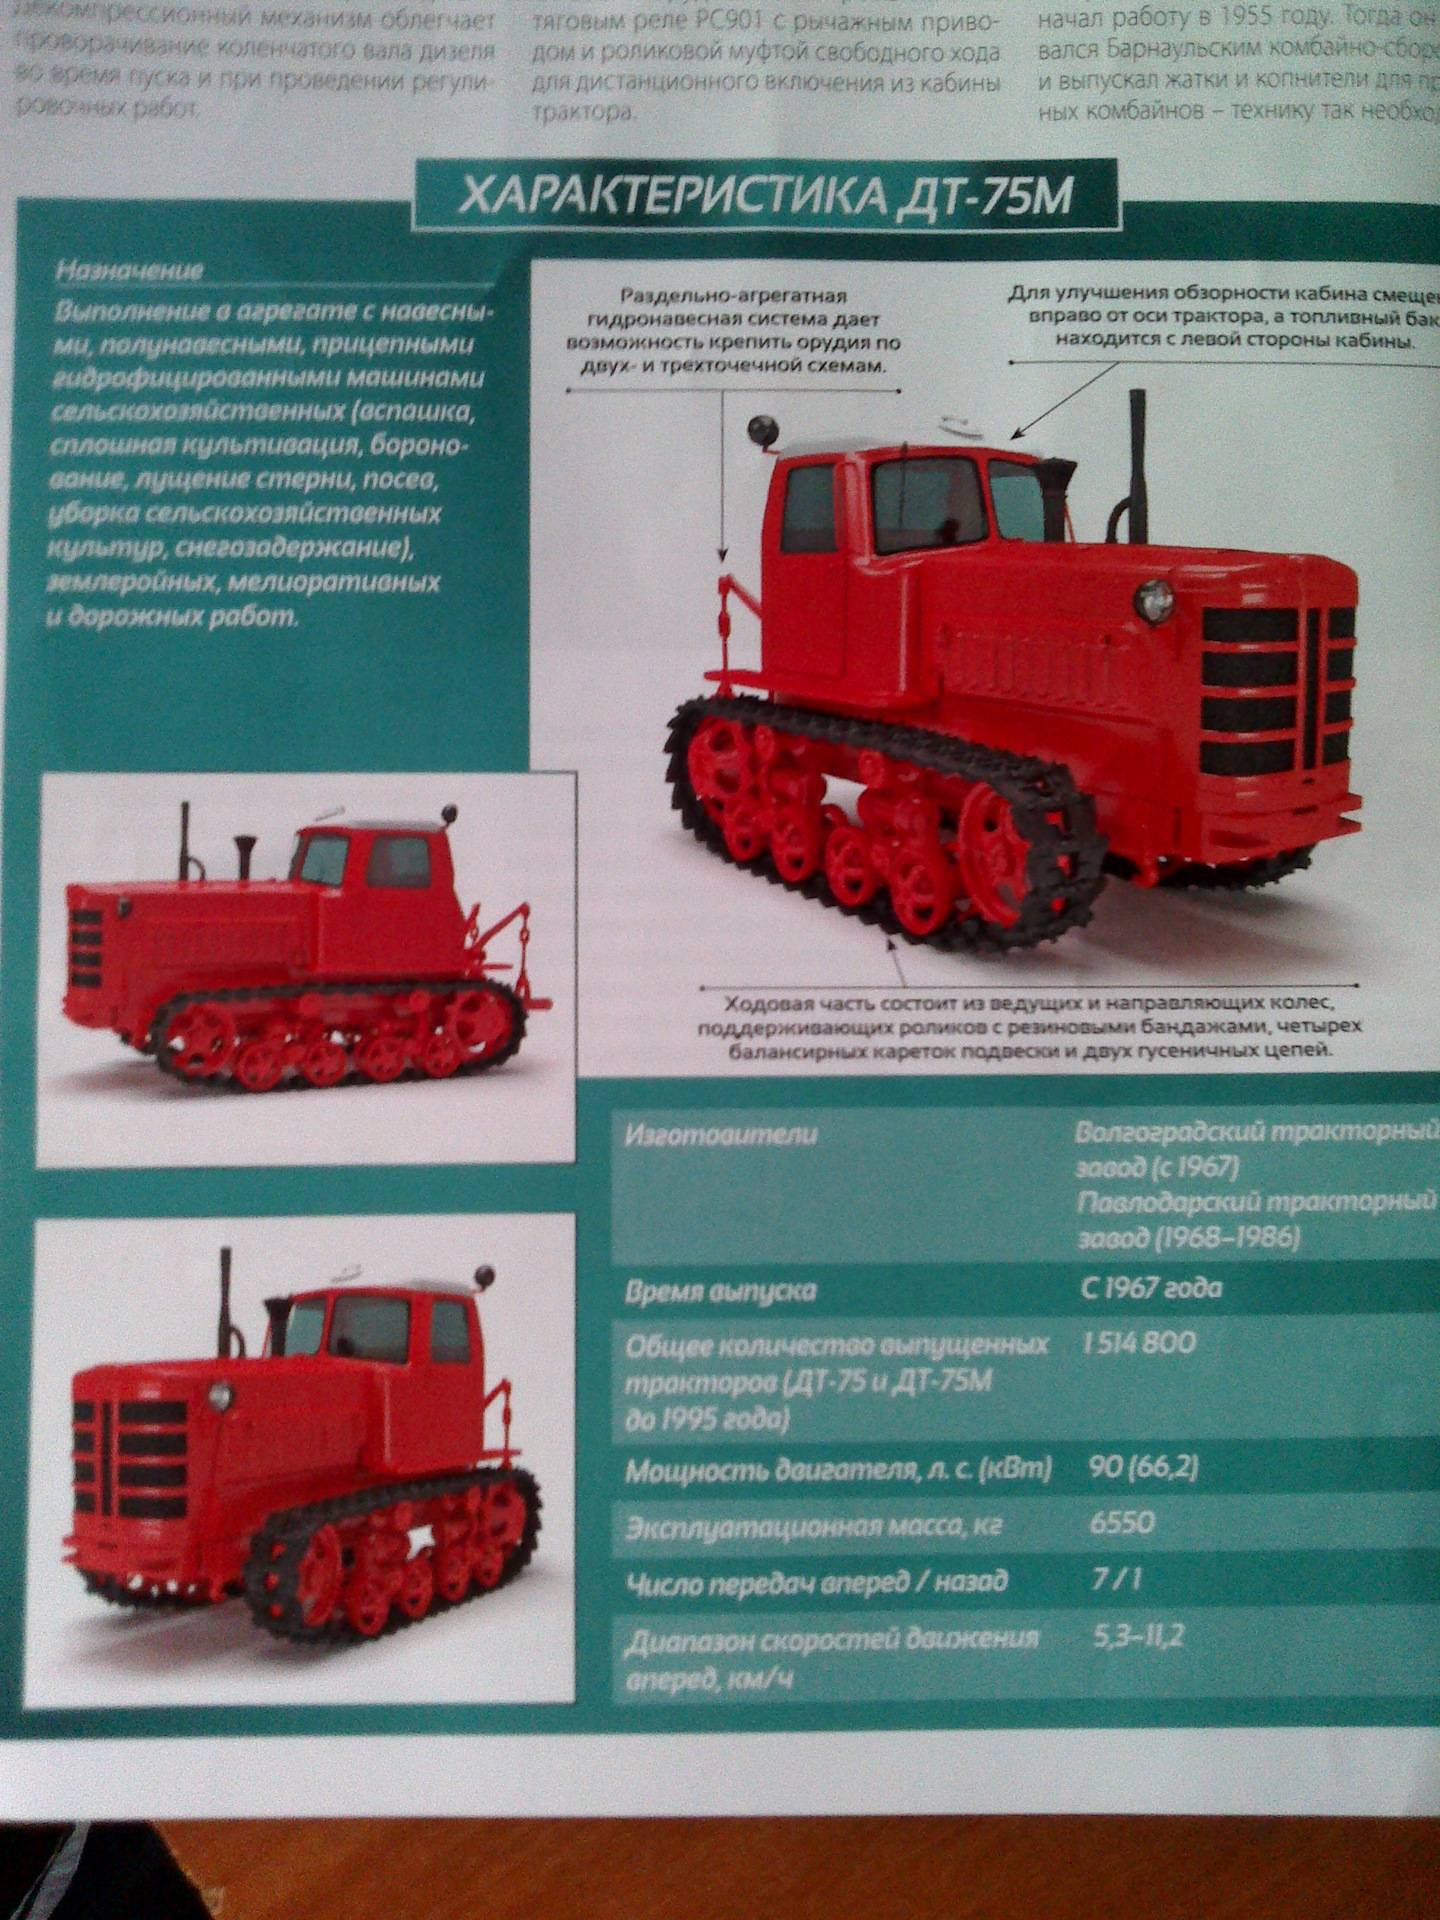 Гусеничные тракторы дт-75 и 75м: производство, характеристики, производители